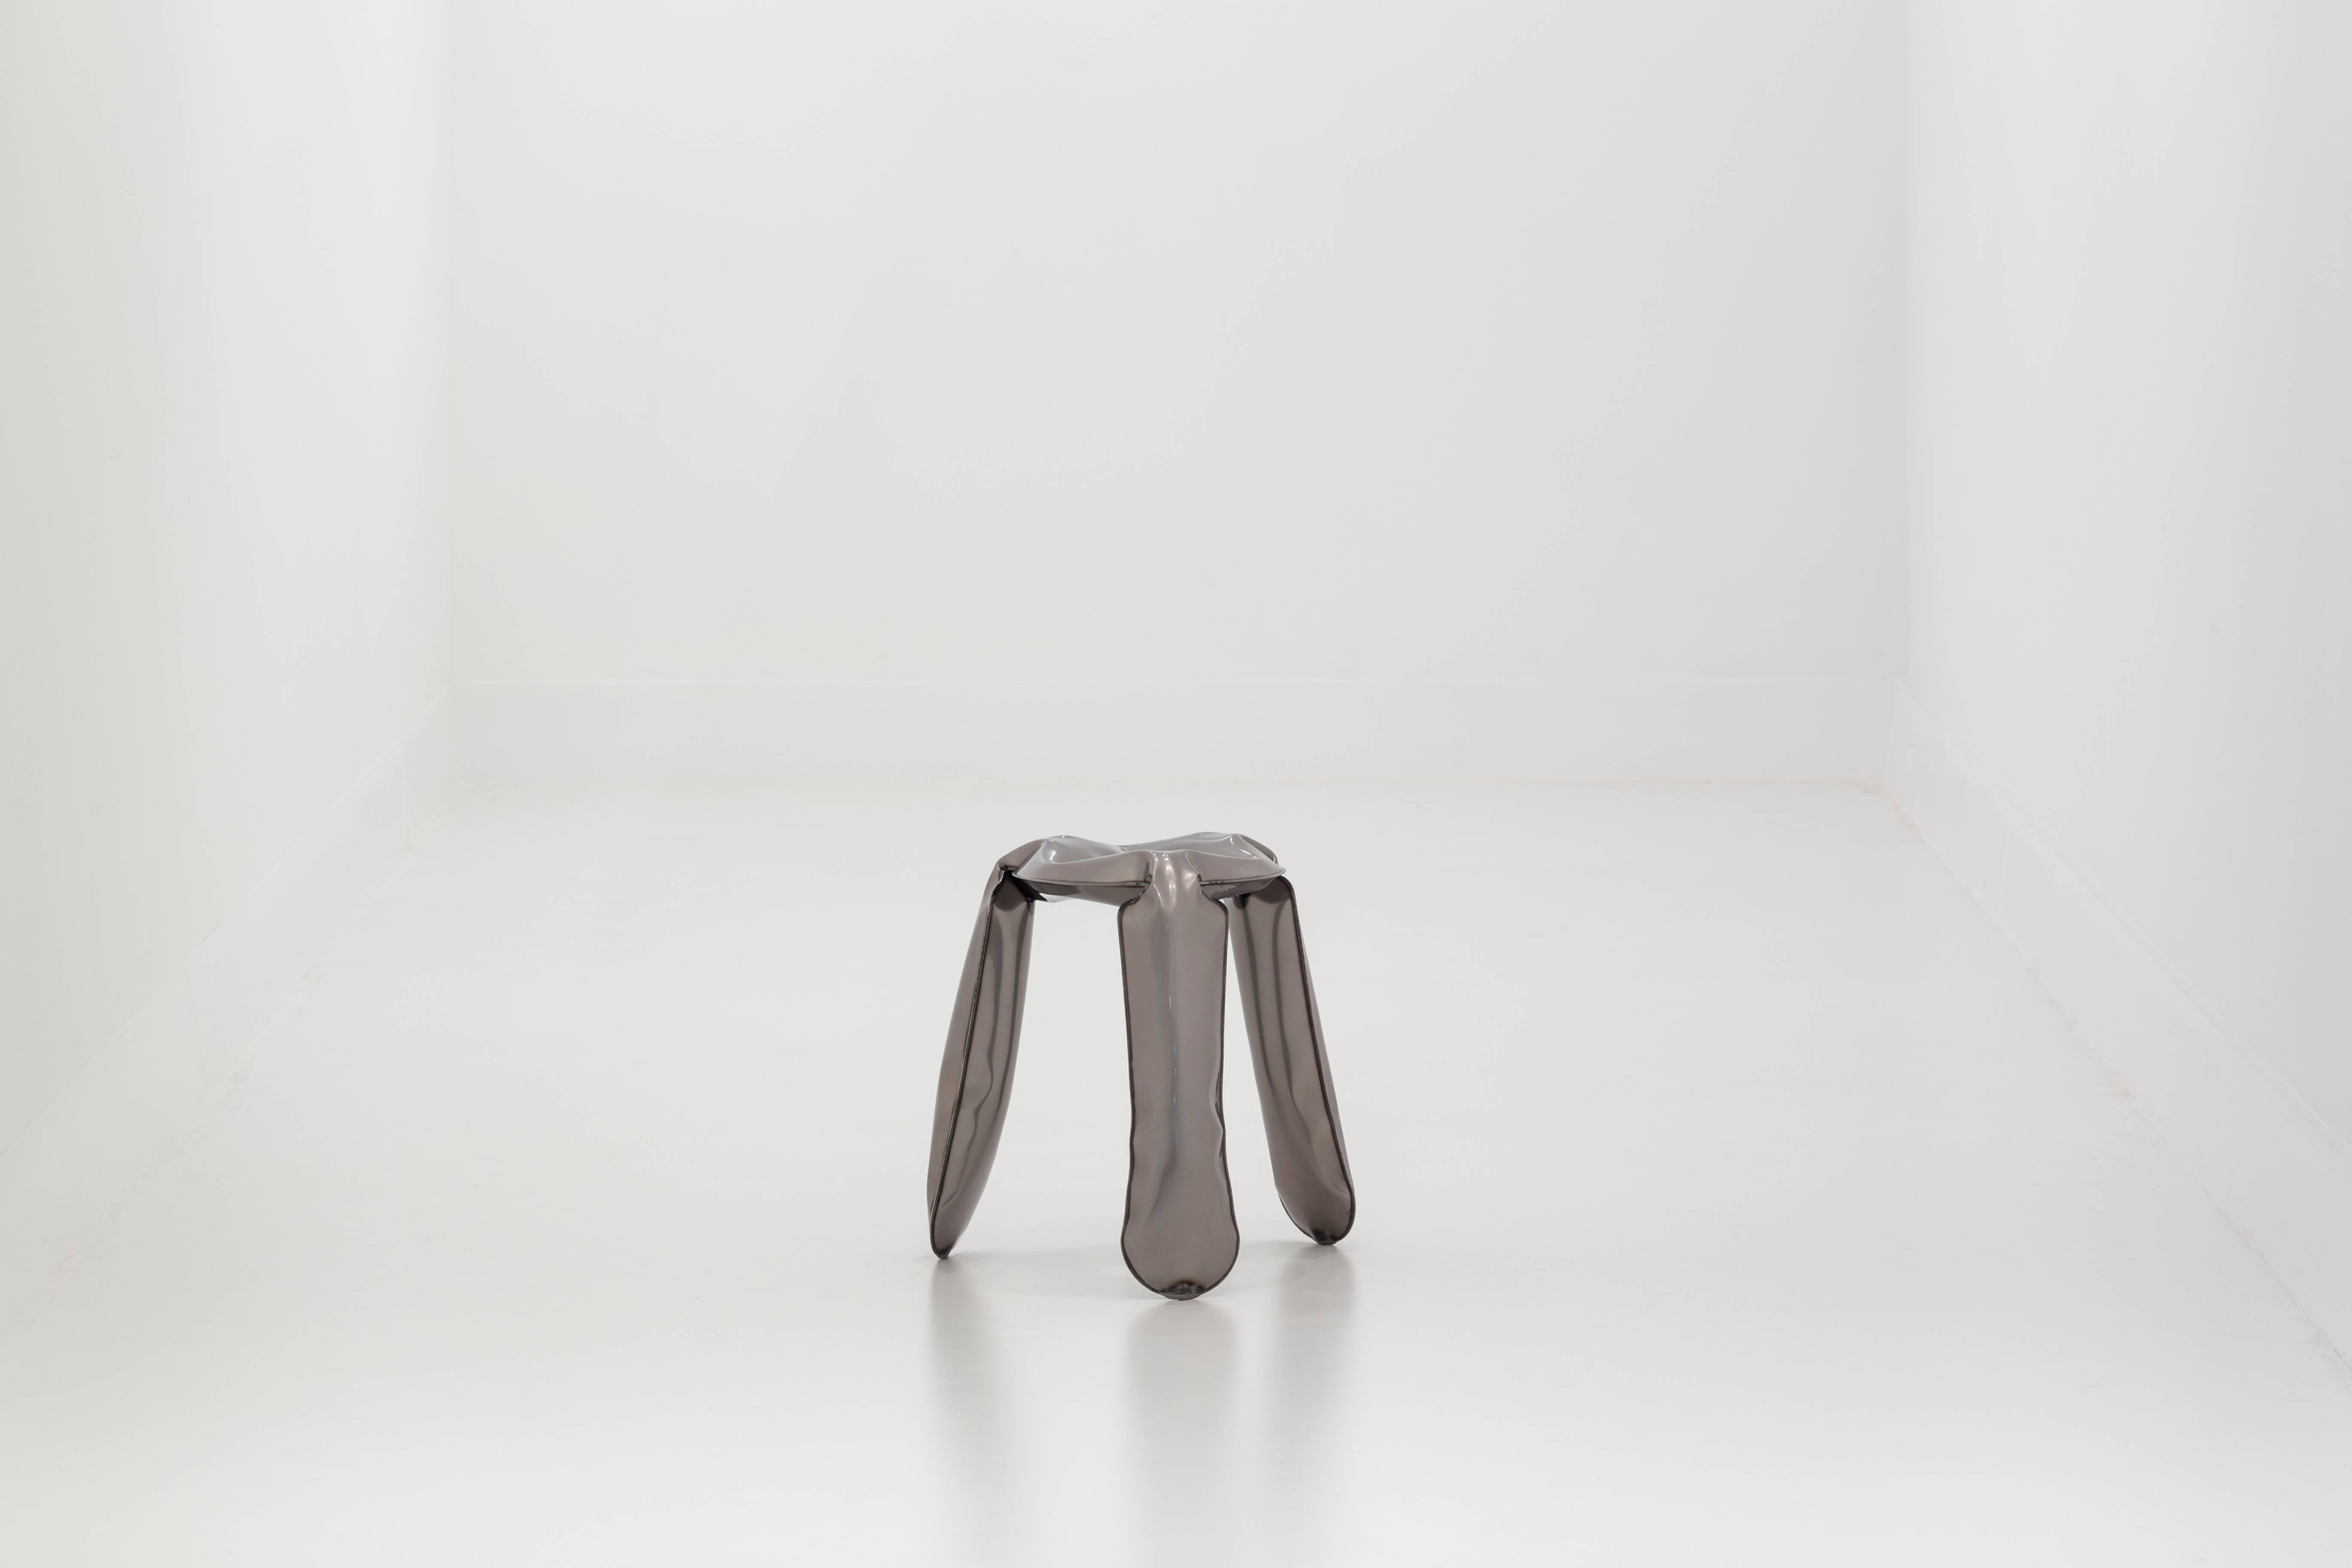 Contemporary Plopp Stool 'mini' by Zieta Prozessdesign, Copper Version For Sale